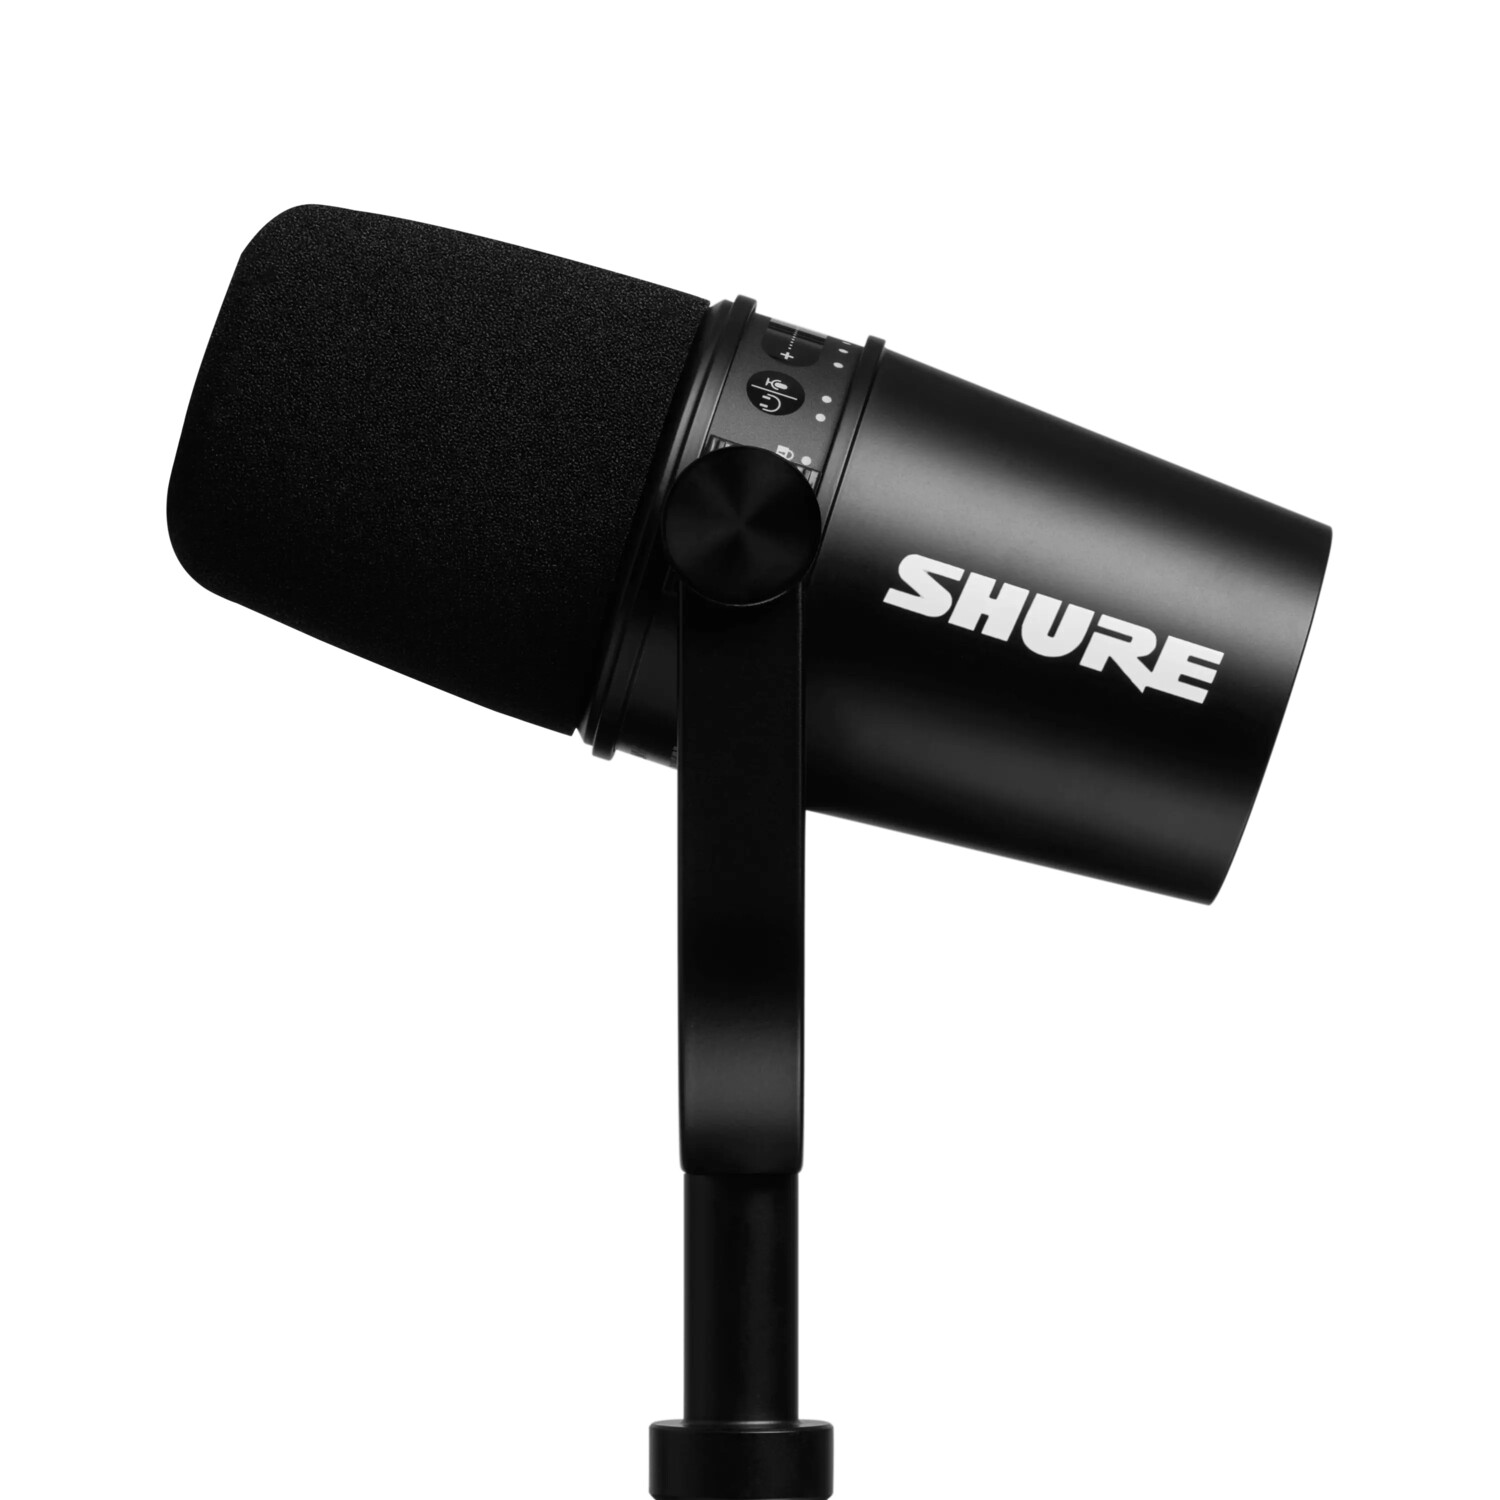 SHURE-MV7-Podcast-KIT-mit-USB-und-XLR-Ausgangen-Farbe-schwarz-inklusive-Manfrotto-Desktop-Stativ